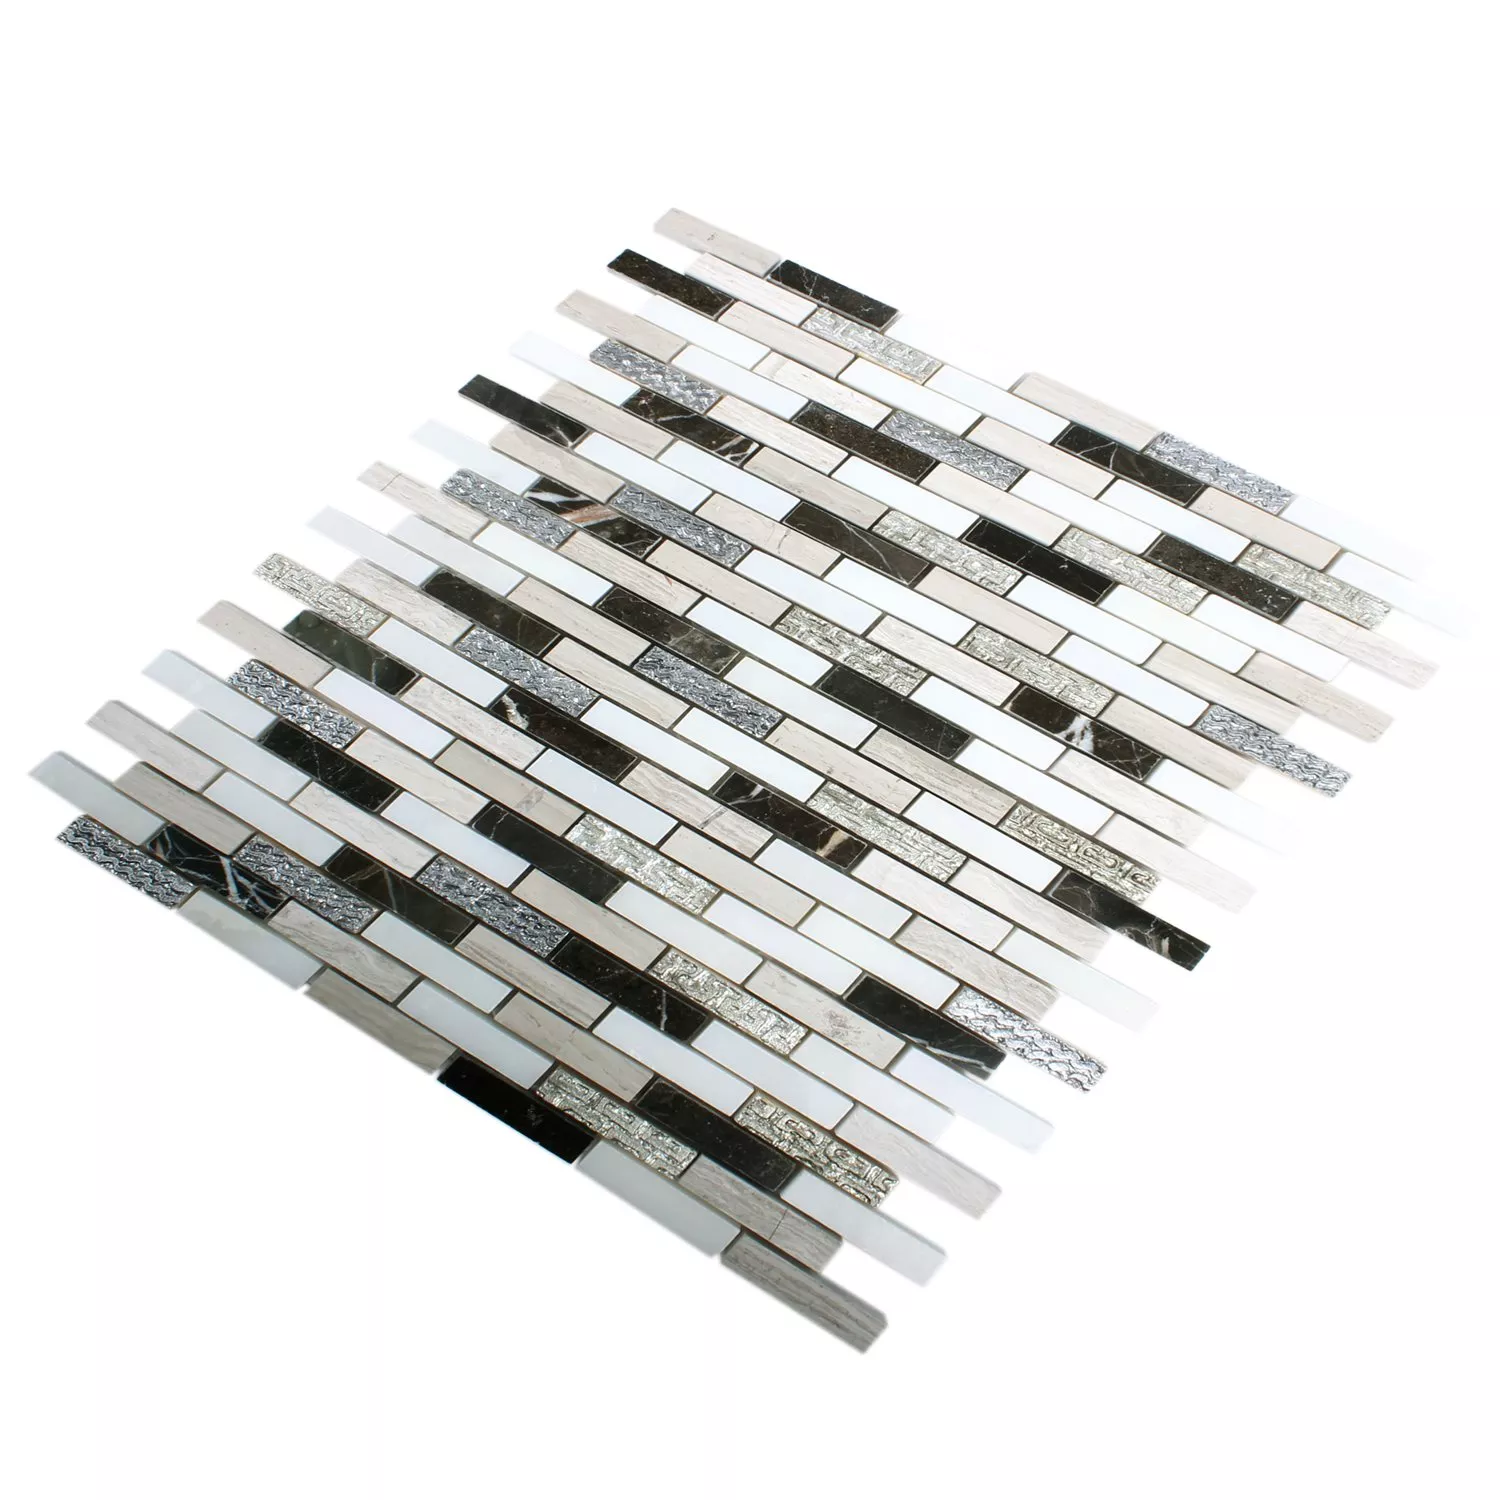 Muster von Mosaikfliesen Sicilia Silber Braun Weiss Grau Brick